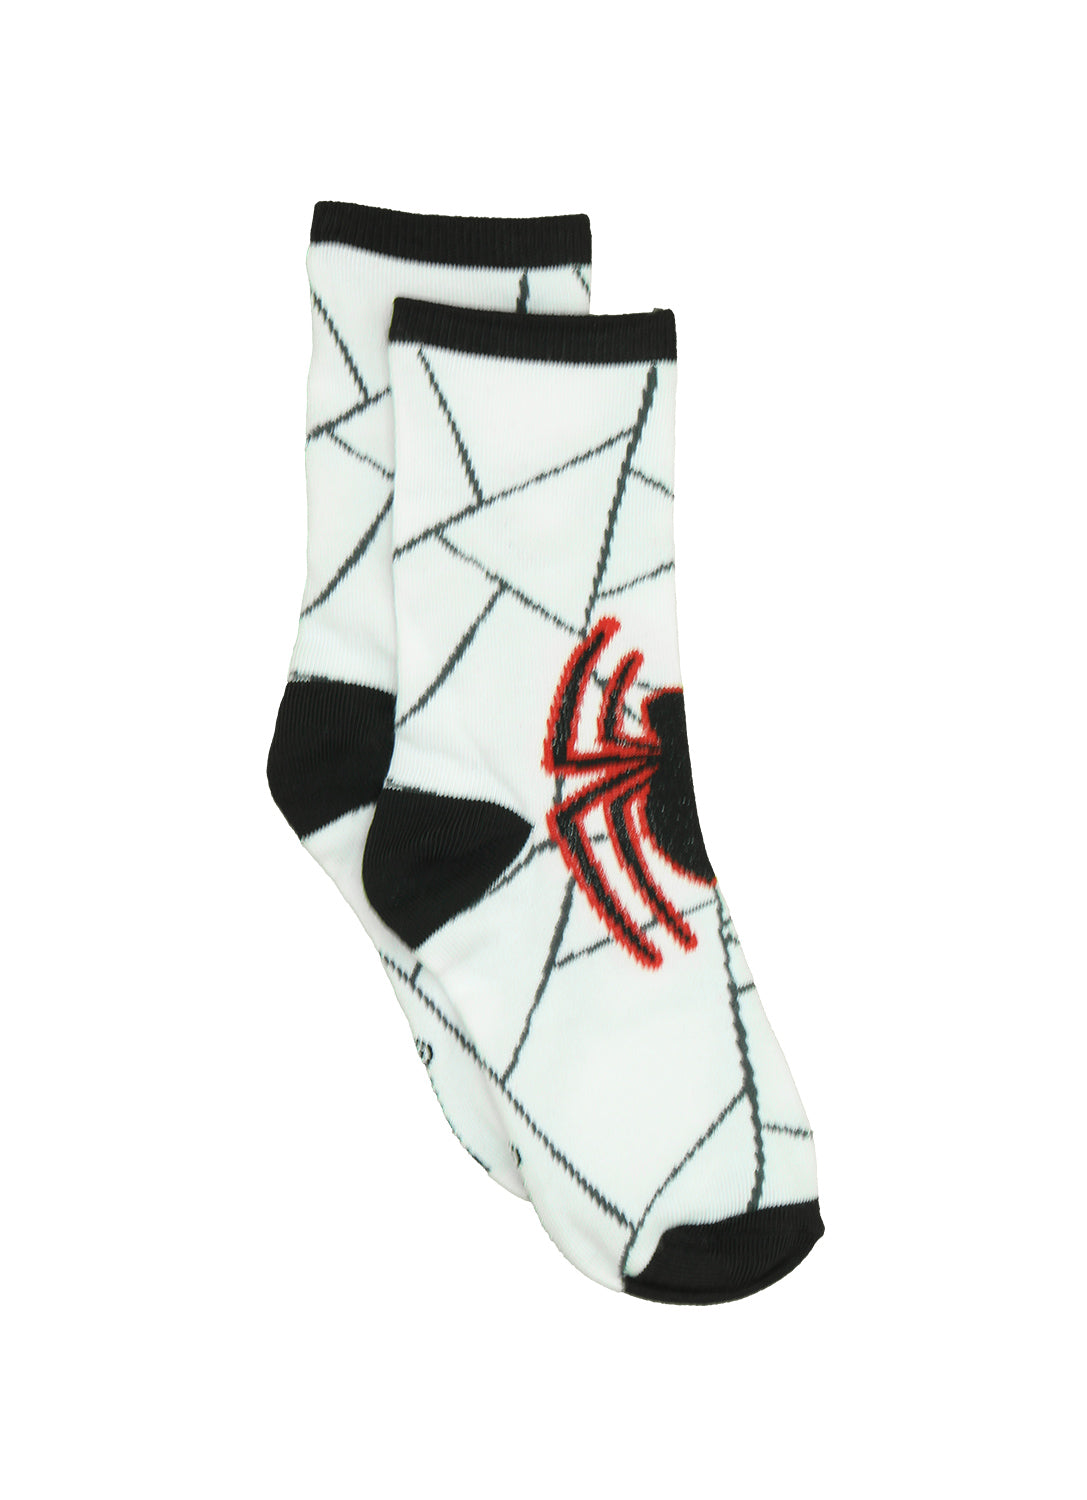 Boys Spider-Man Socks - 6 Pack